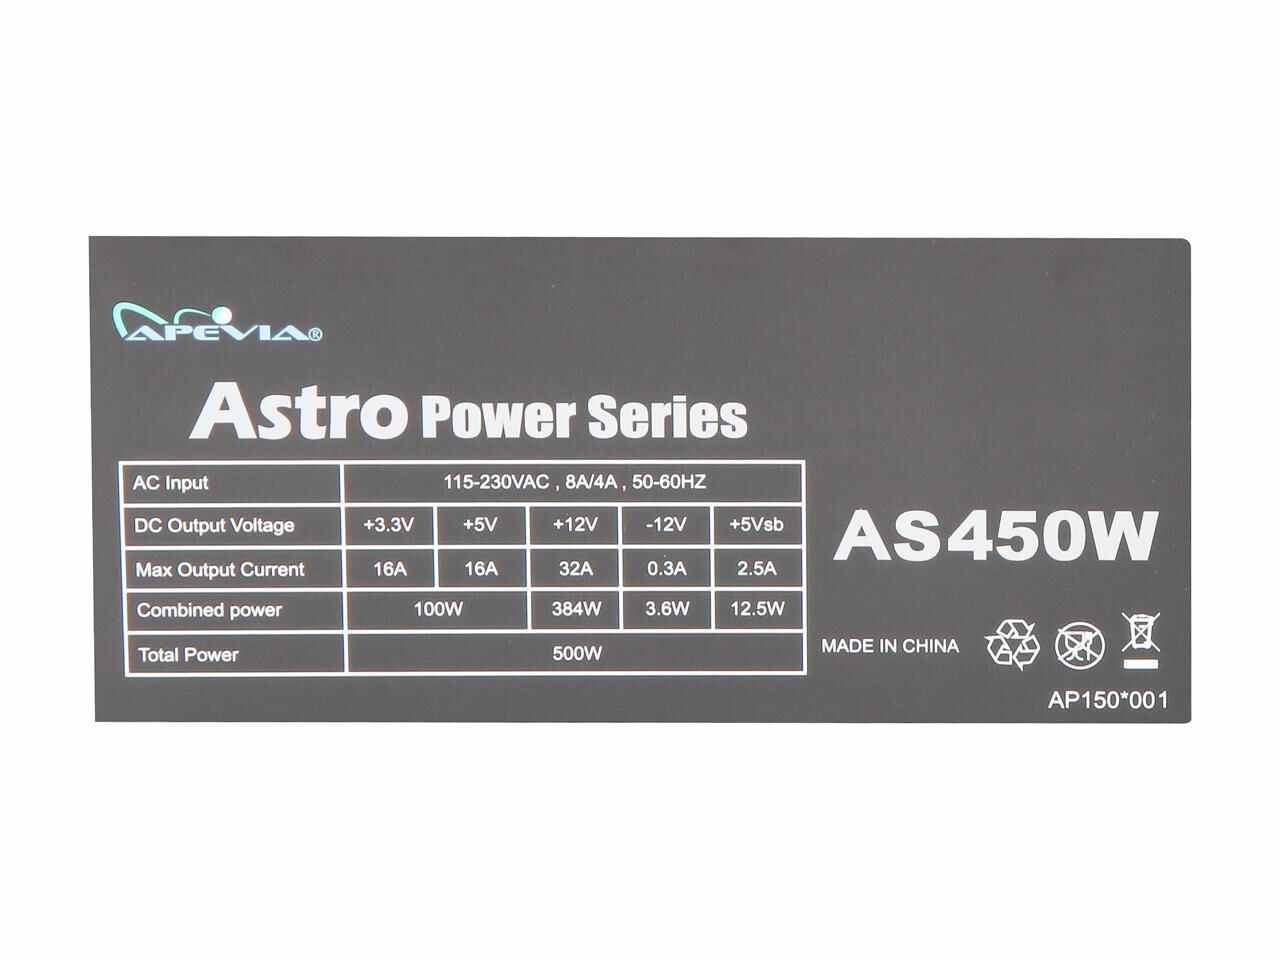 Apevia Atx-As450W 450W Atx 12V Power Supply